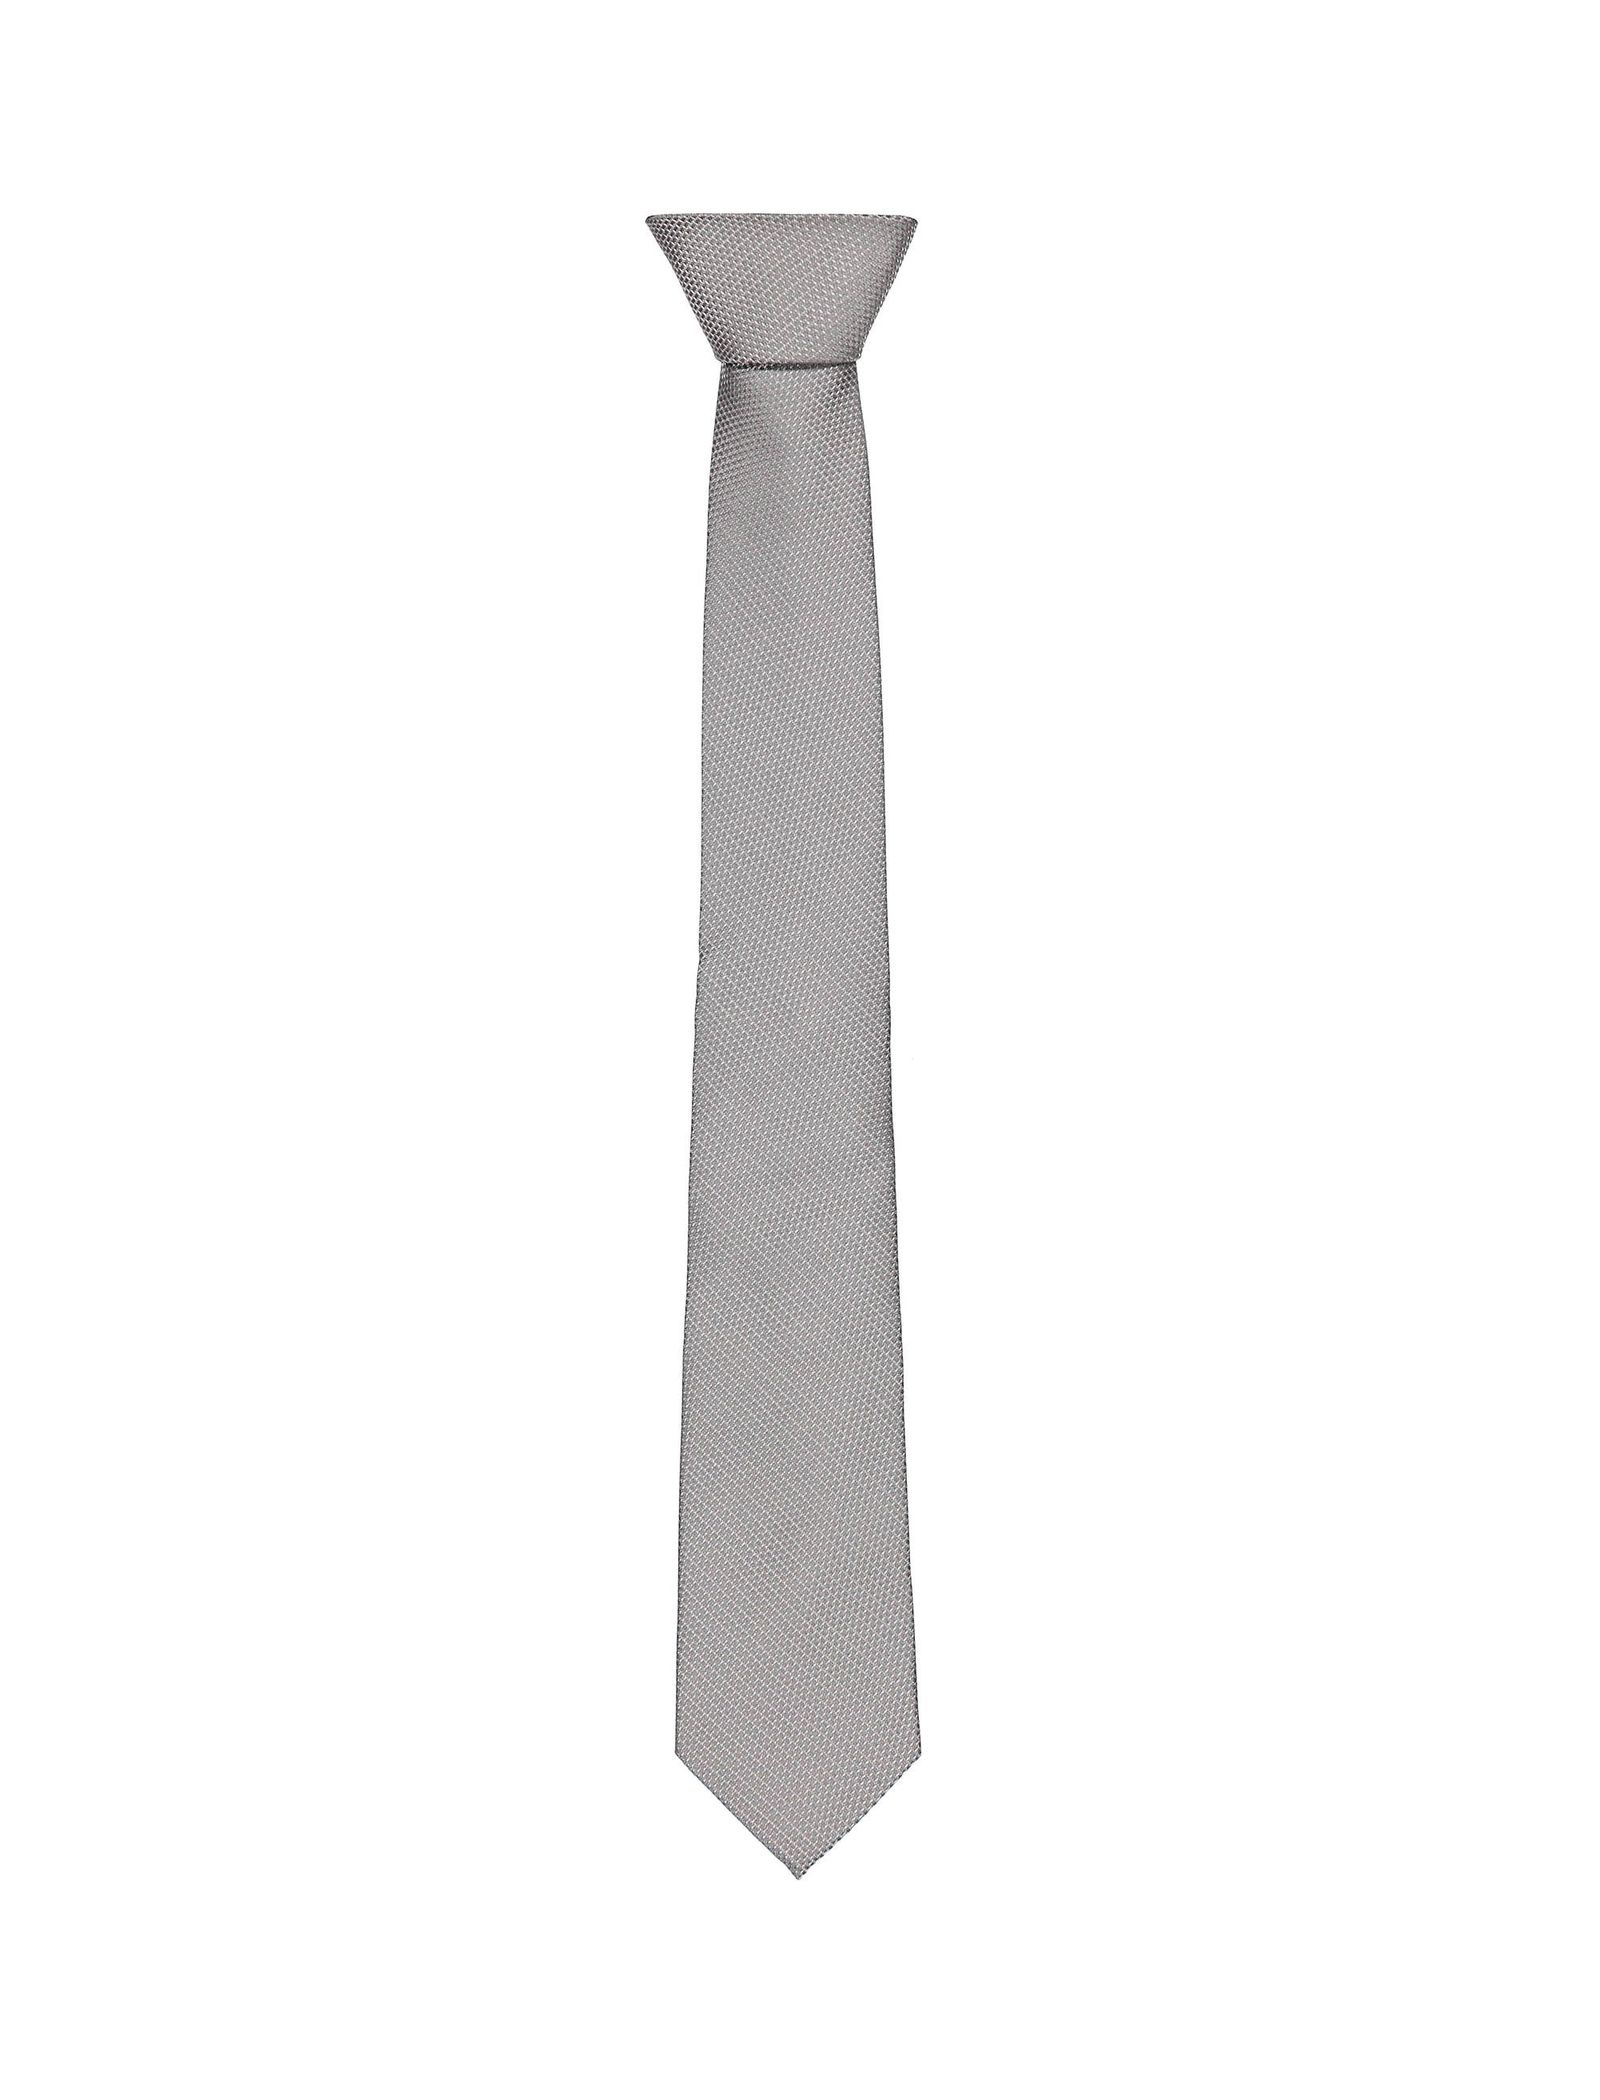 کراوات طرحدار مردانه - مانگو - طوسي - 1